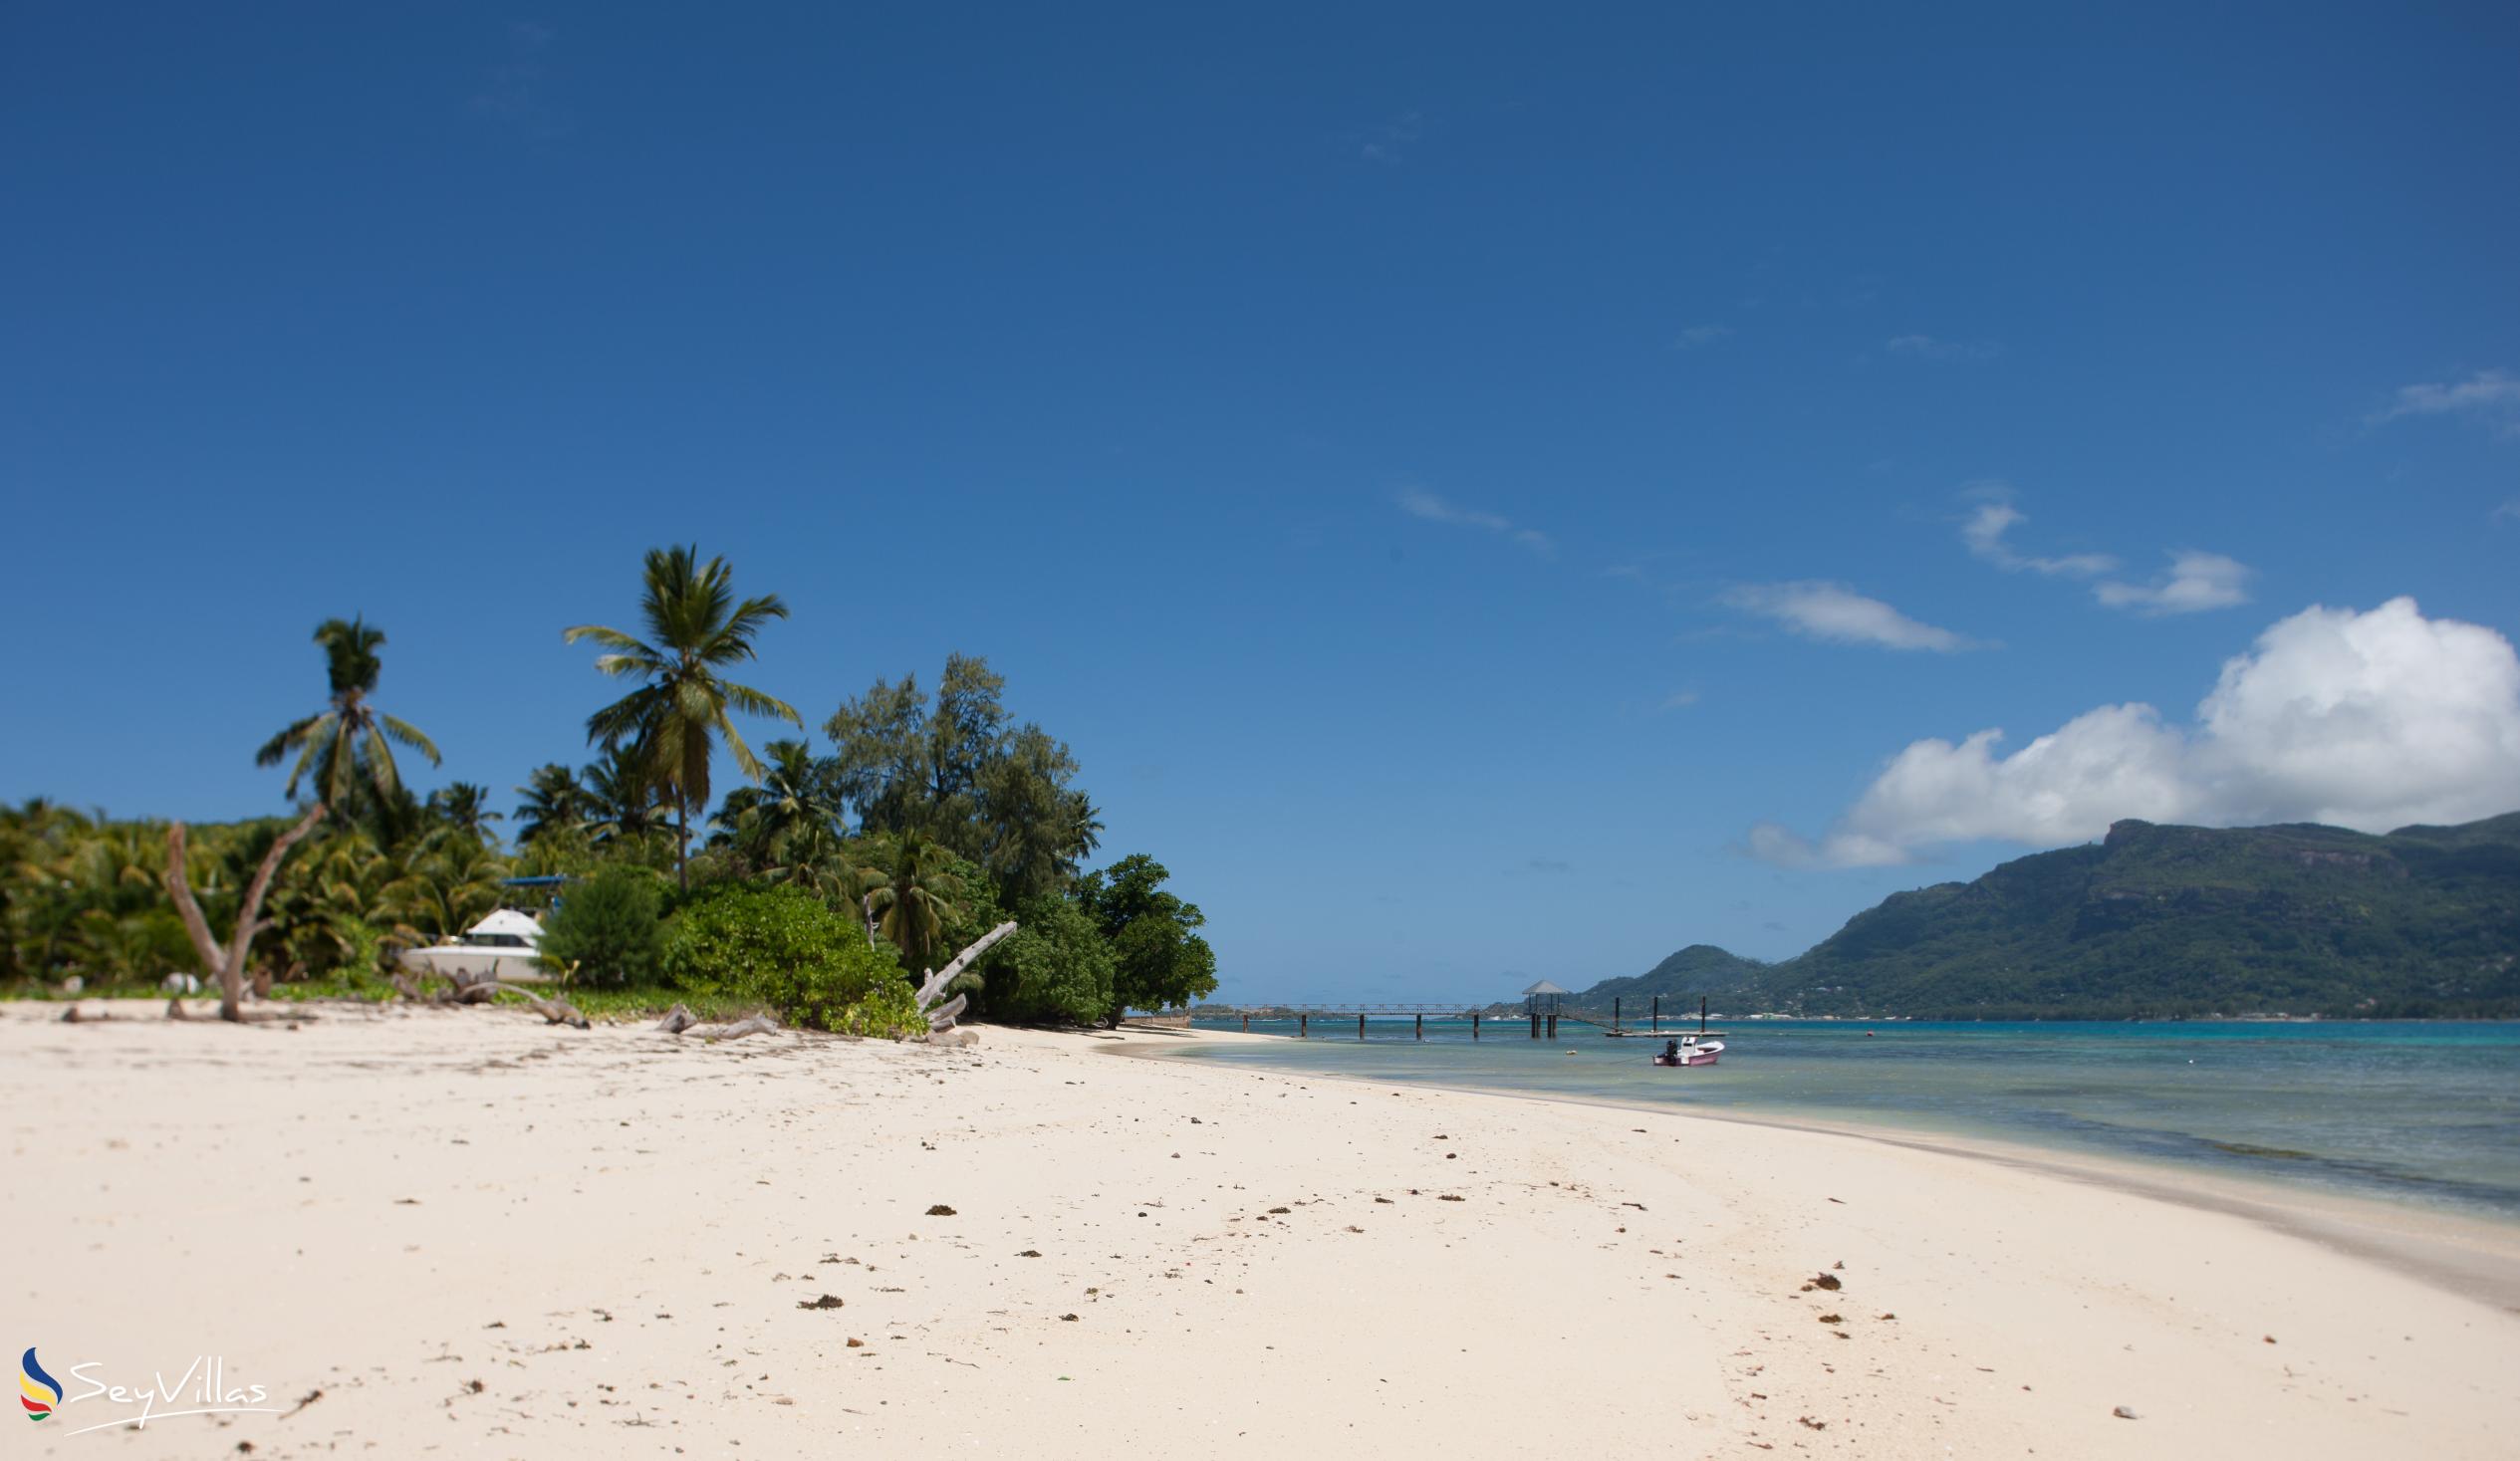 Photo 3: Takamaka Beach - Cerf Island (Seychelles)